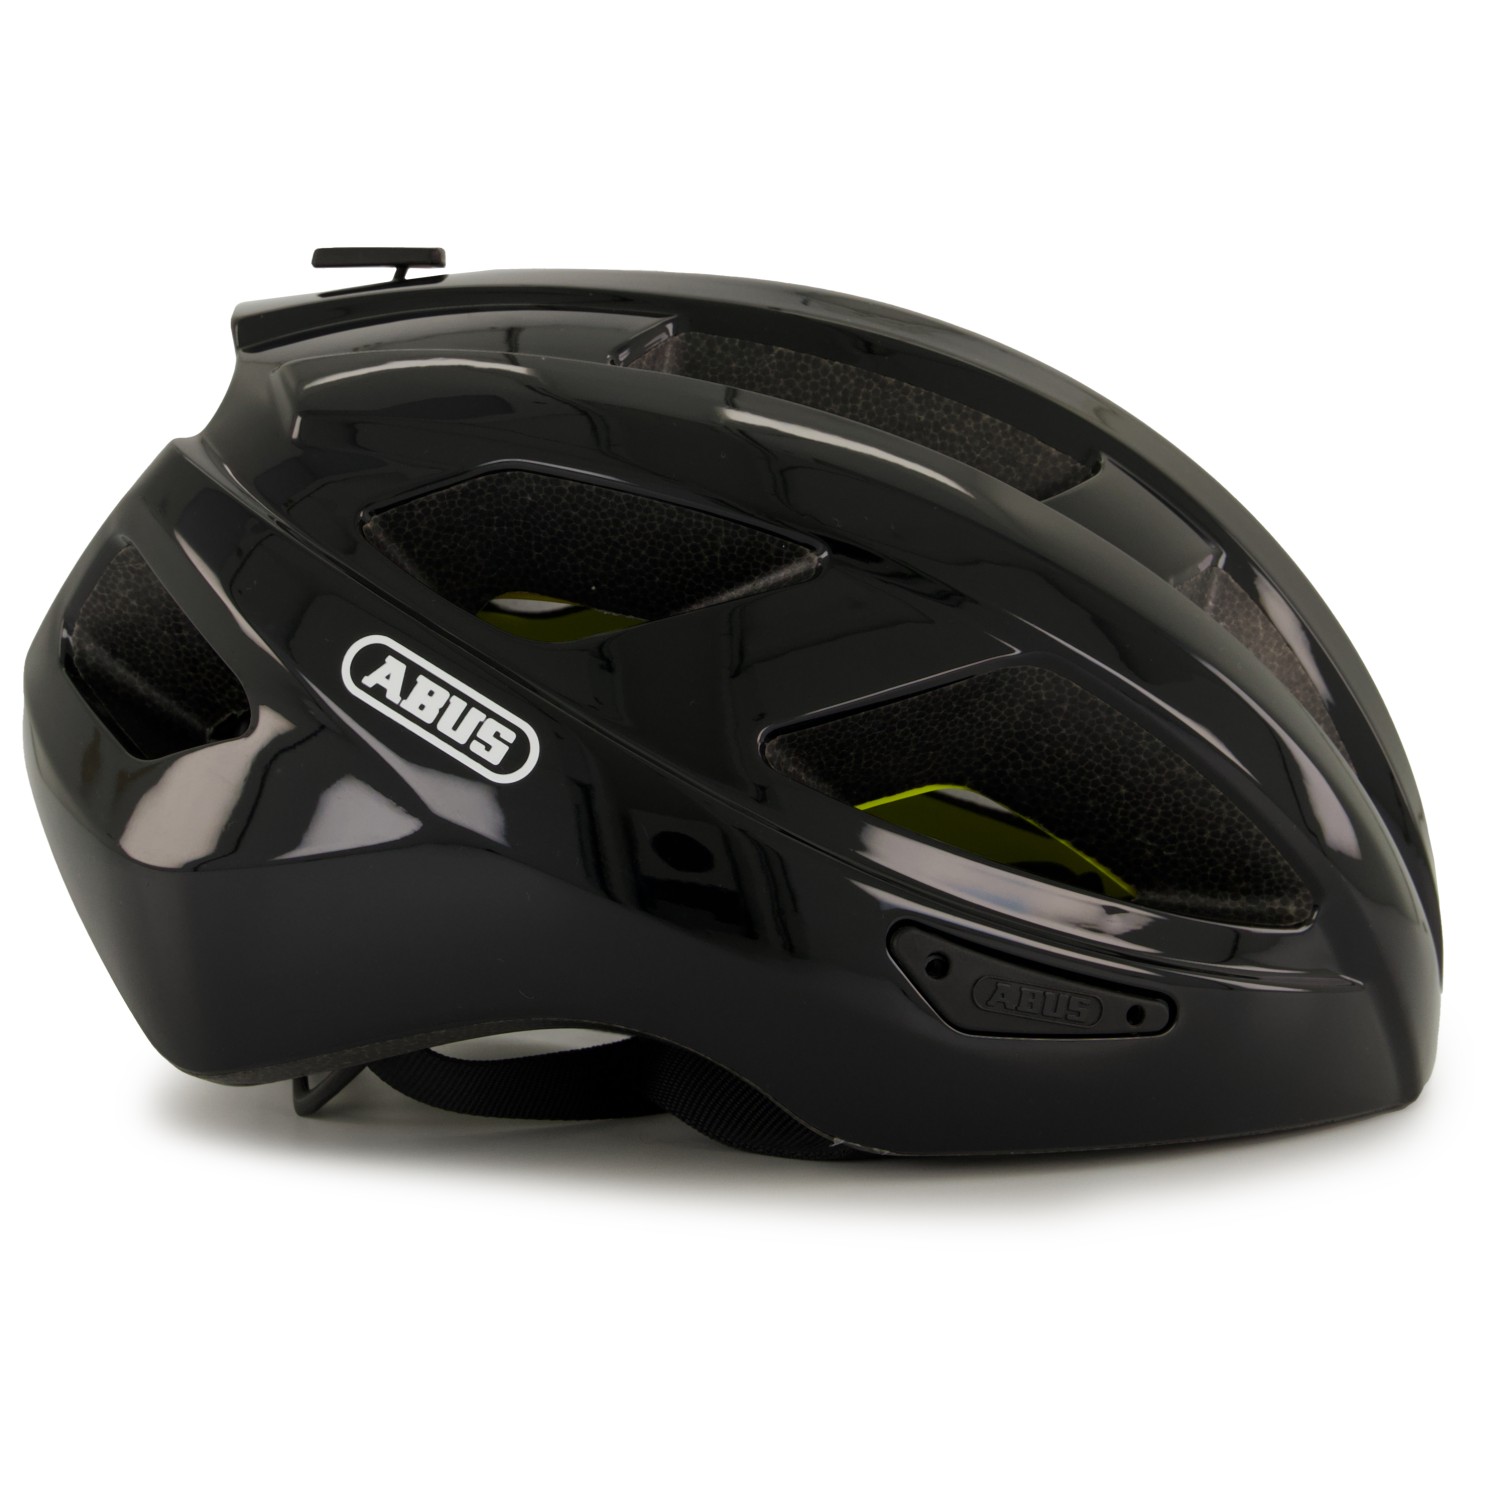 Велосипедный шлем Abus Macator MIPS, цвет Shiny Black